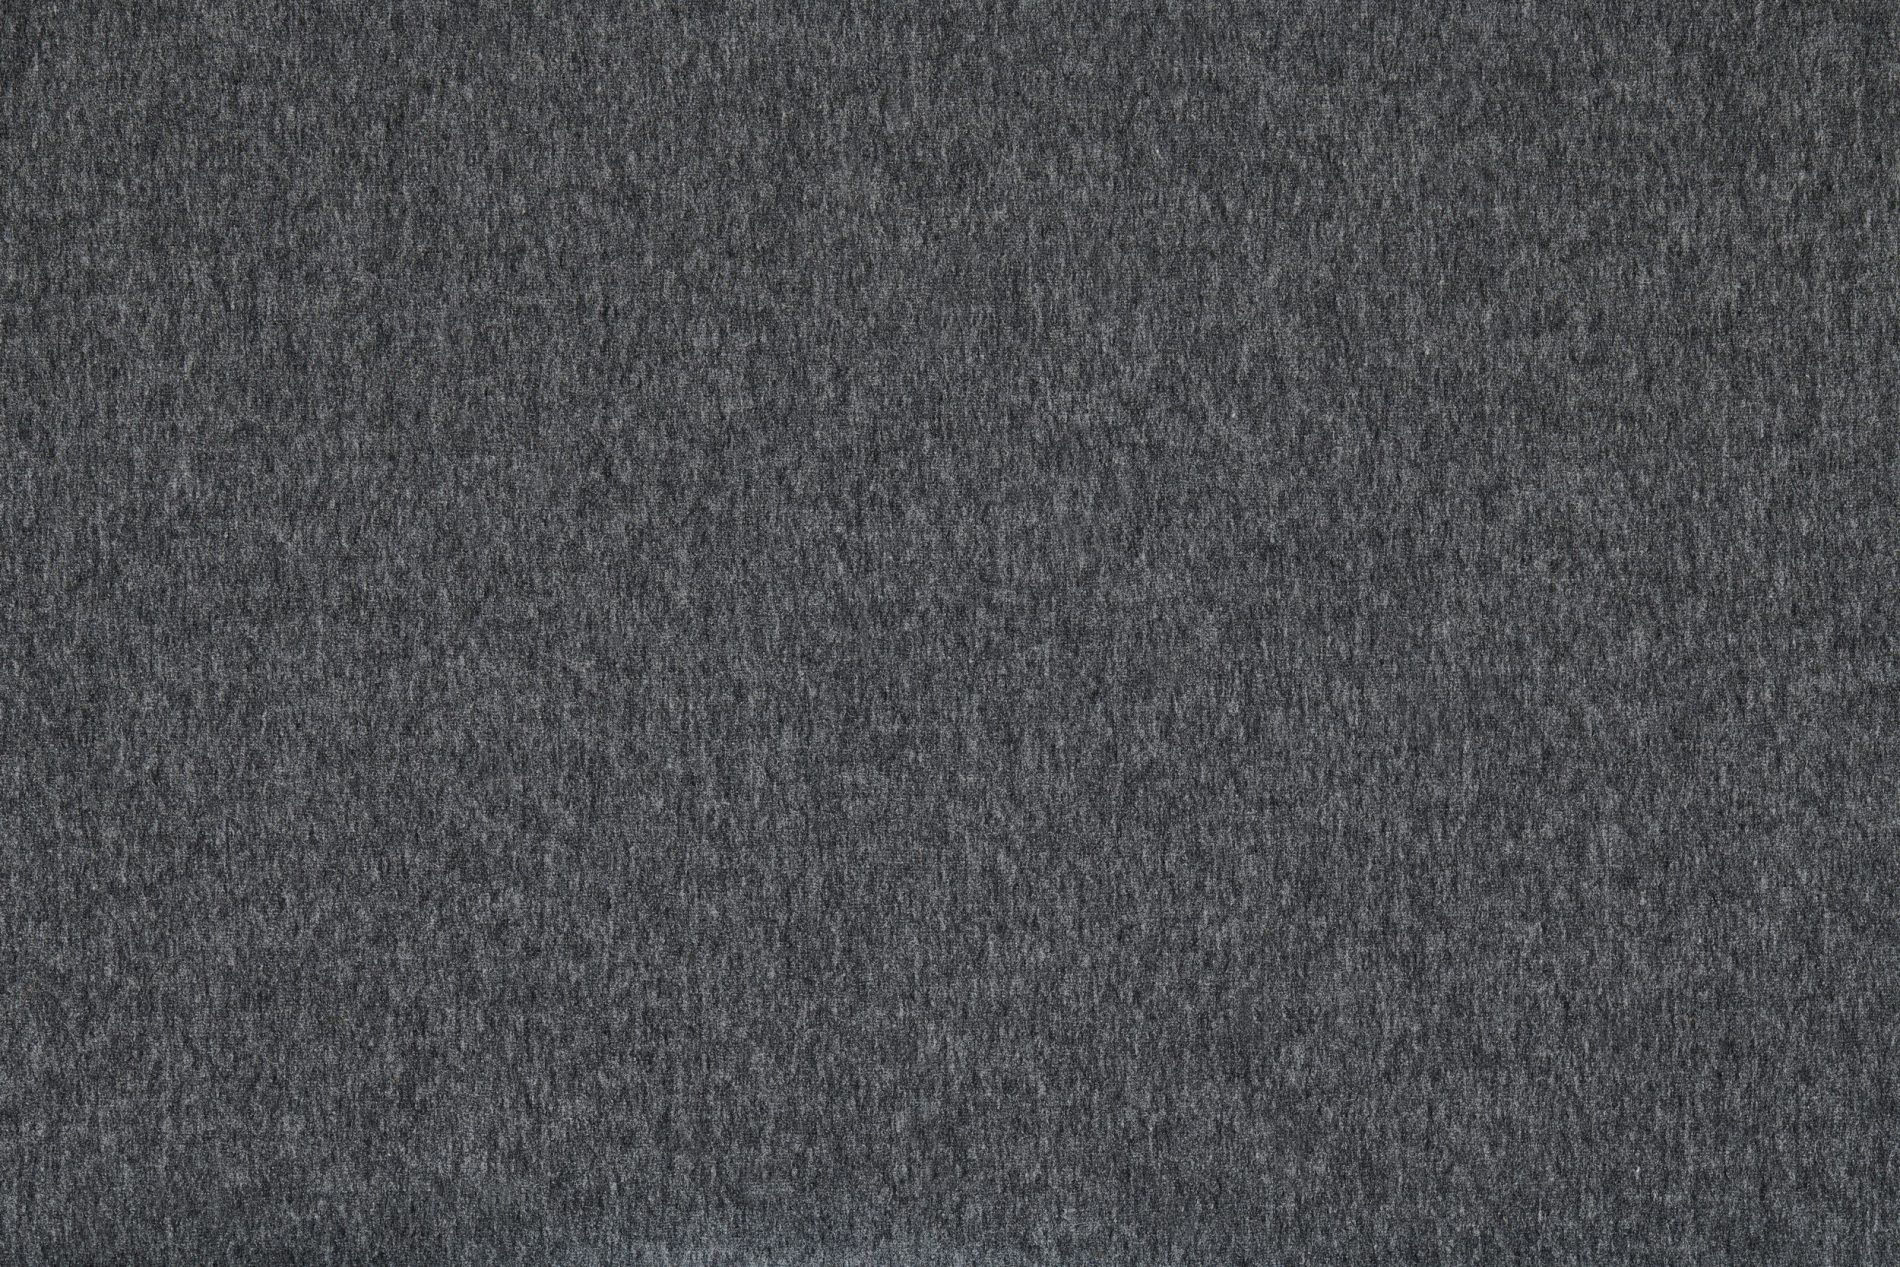 Classic 370 Brushed Merino wool (119/8002)